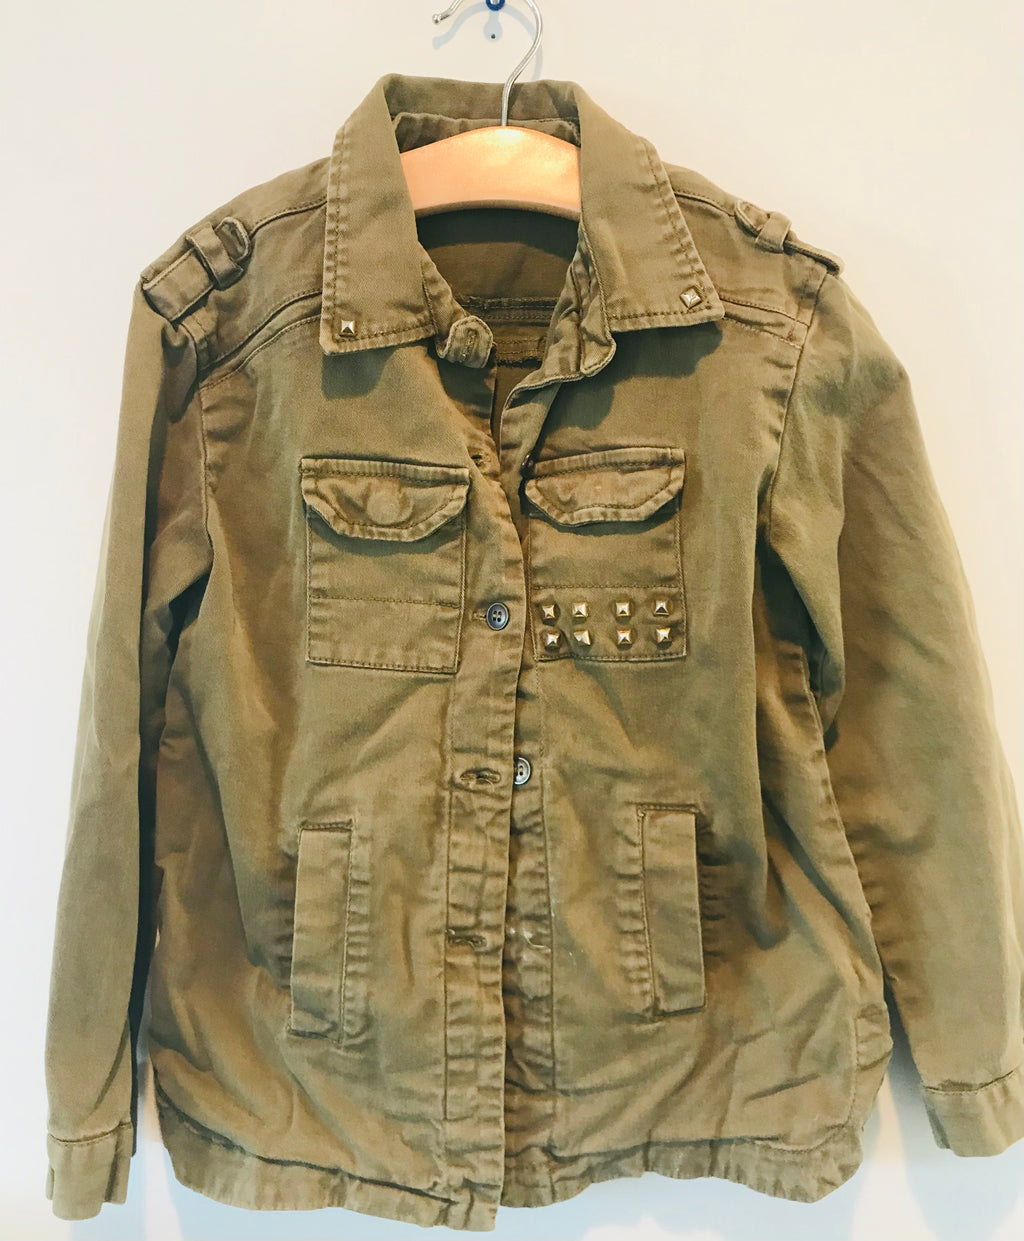 Vintage studded army jacket